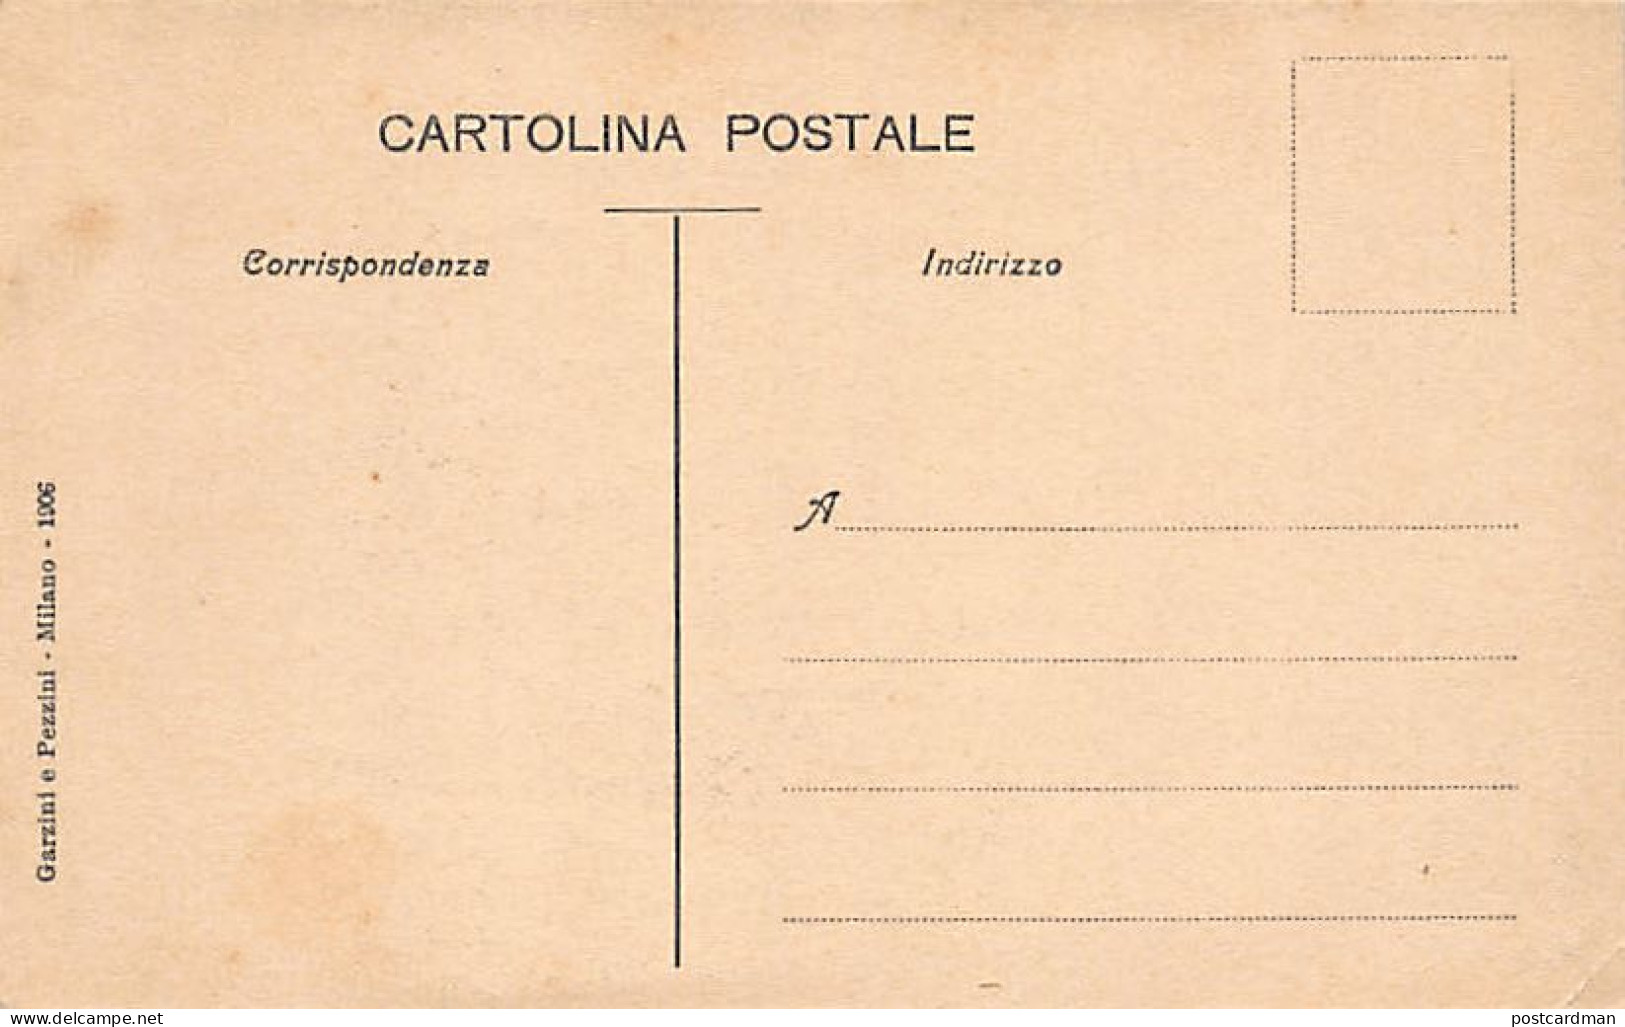 MILANO - La Commissione Dei Postelegrafici Di Parigi - 5 Novembre 1905 - Milano (Mailand)